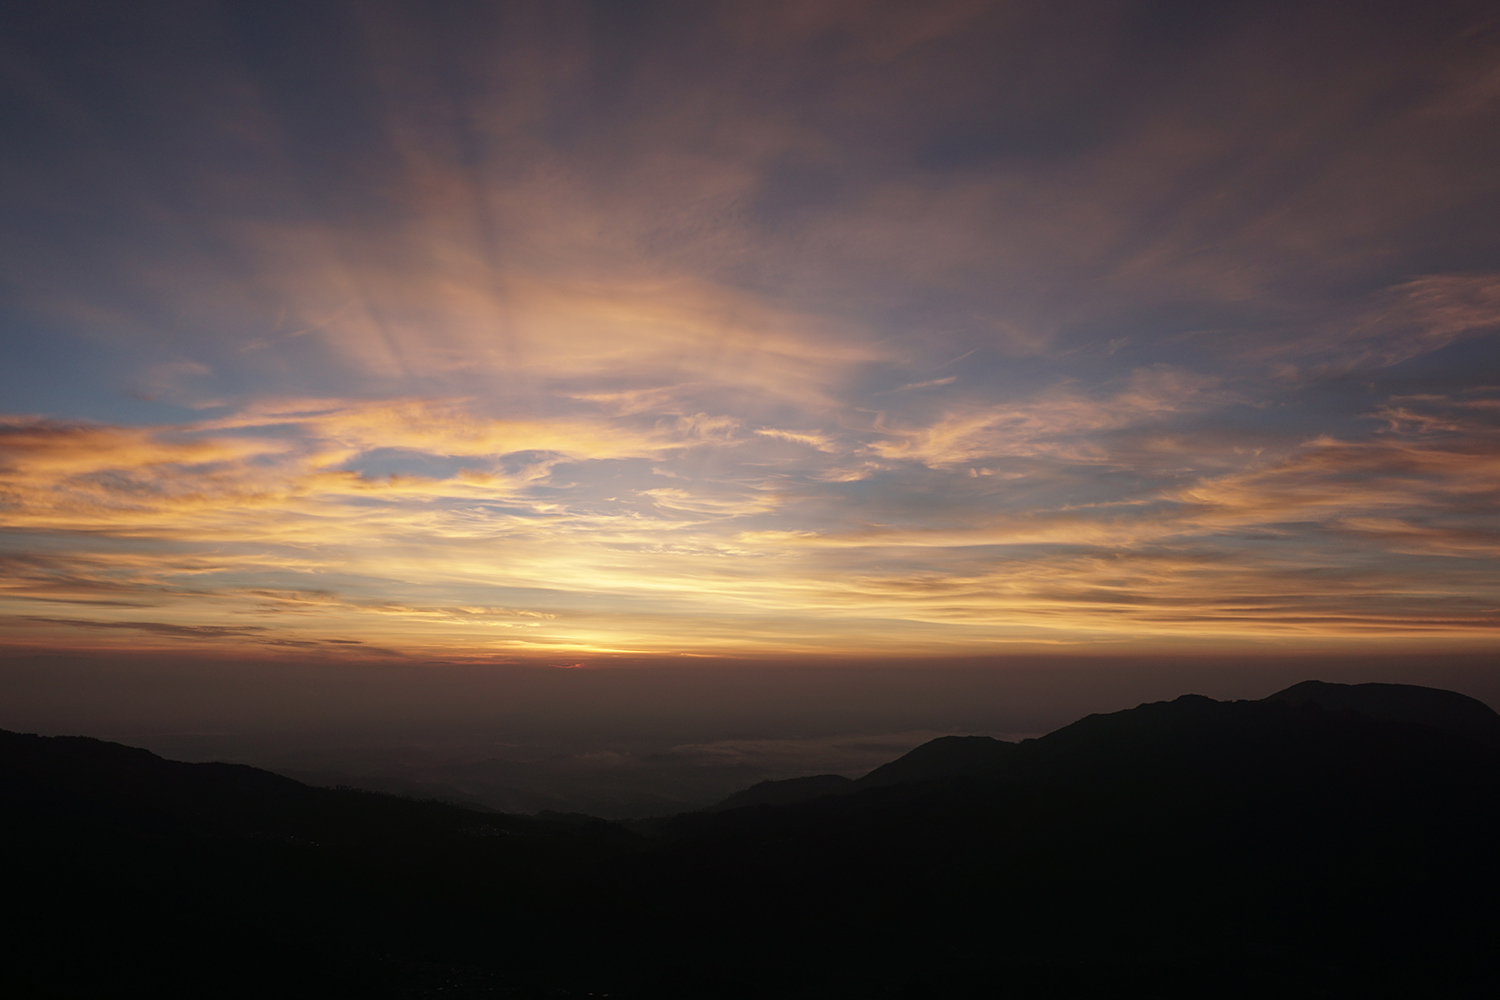 Der Multimedia Producer Nicola Hasler hat dieses Foto gemacht, es zeigt einen Sonnenuntergang auf einem Vulkan